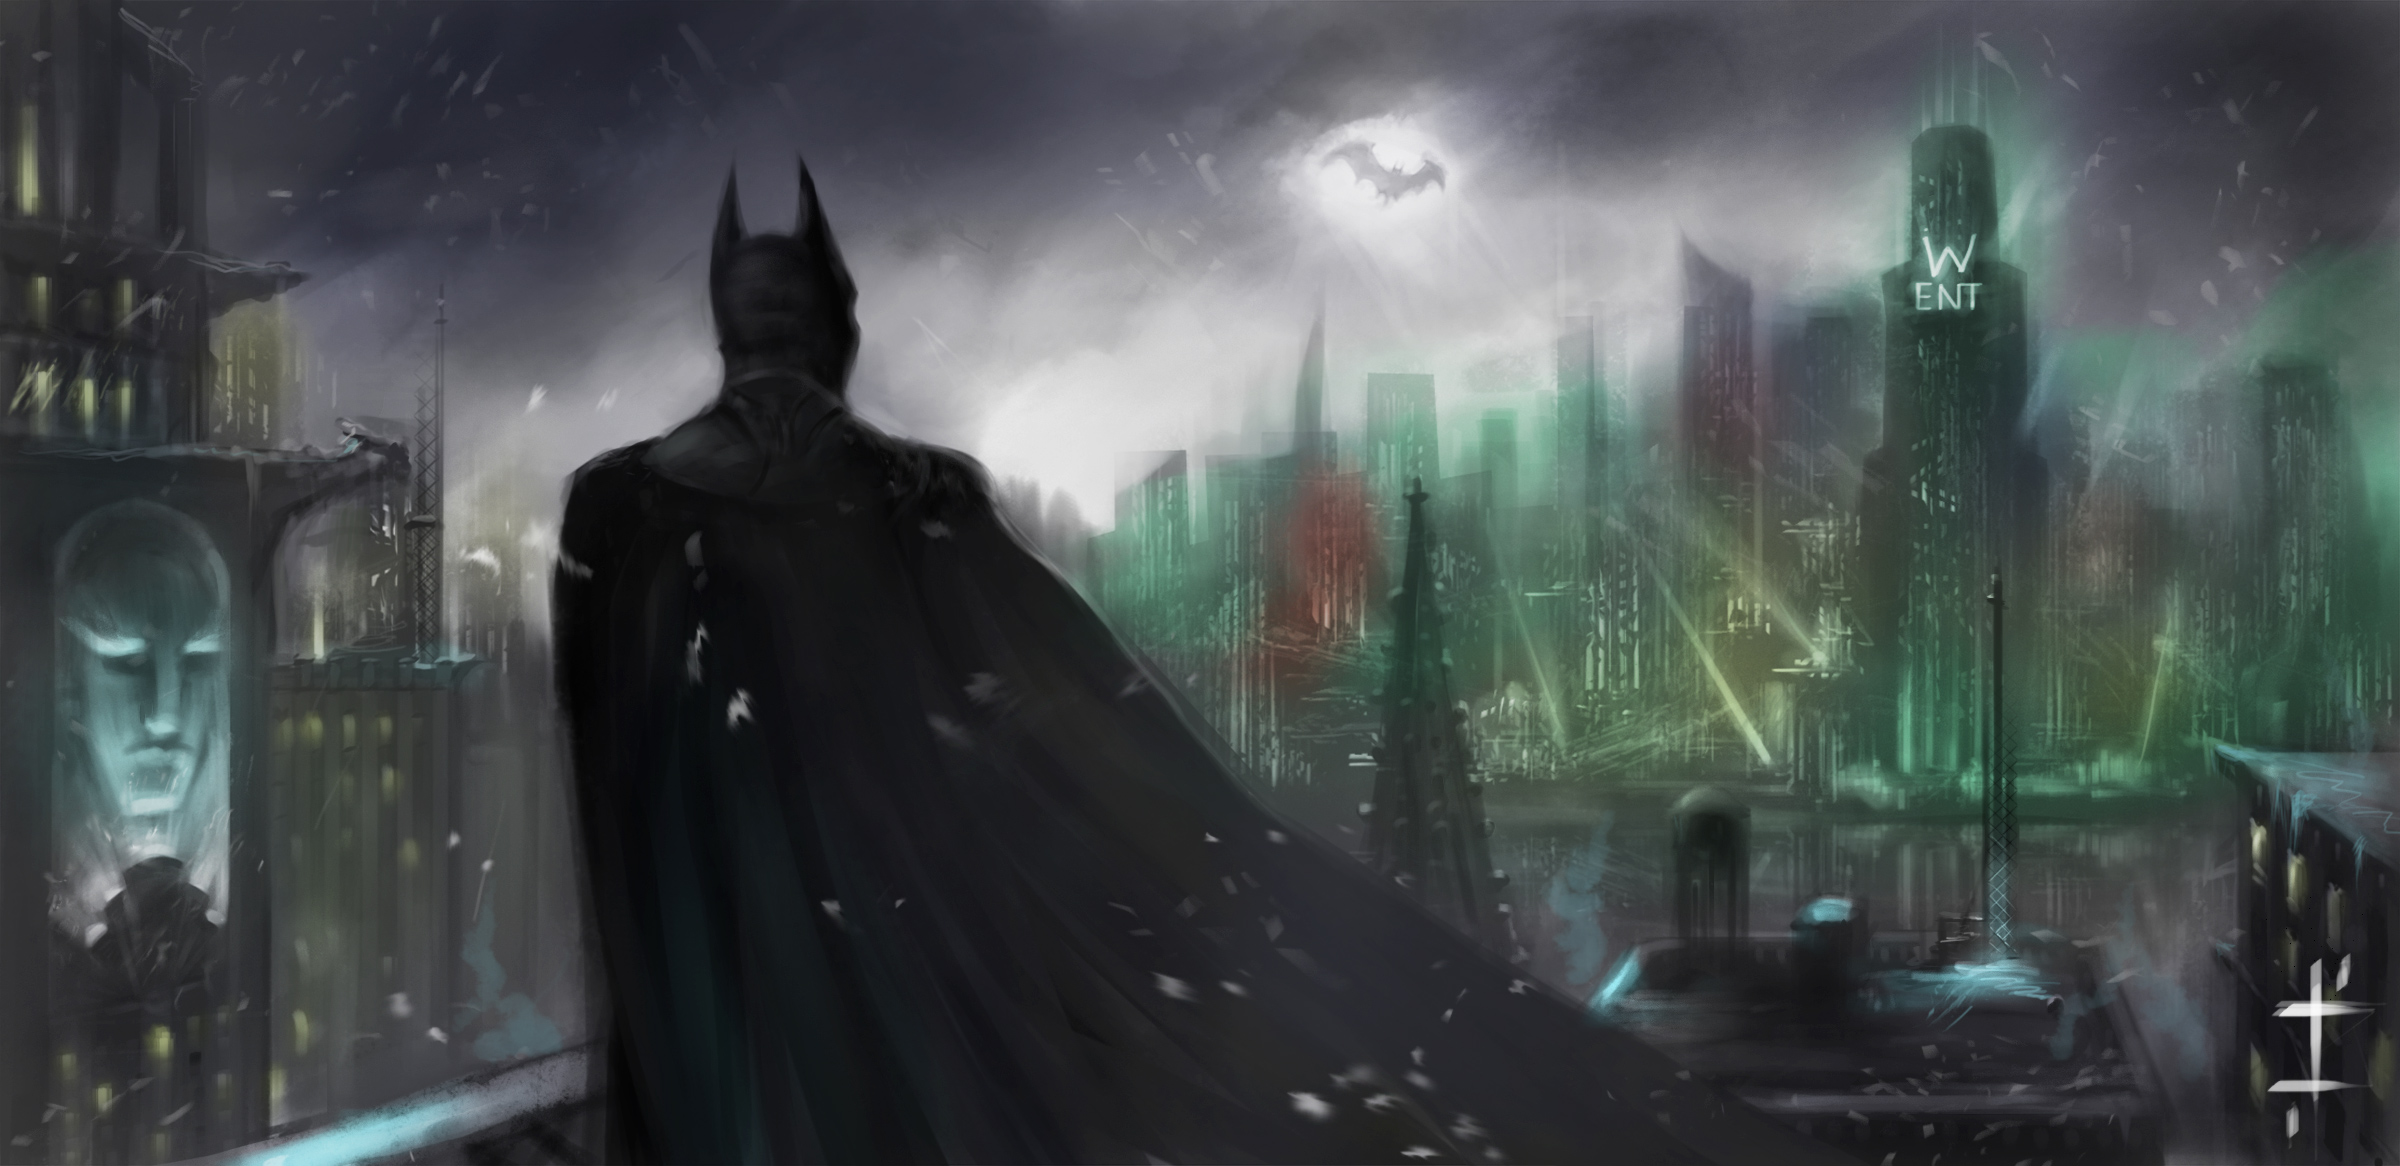 Wallpaper Of Batman, Dc Comics, Art, Gotham Background - Batman Fondos De Pantalla Hd Para Pc , HD Wallpaper & Backgrounds